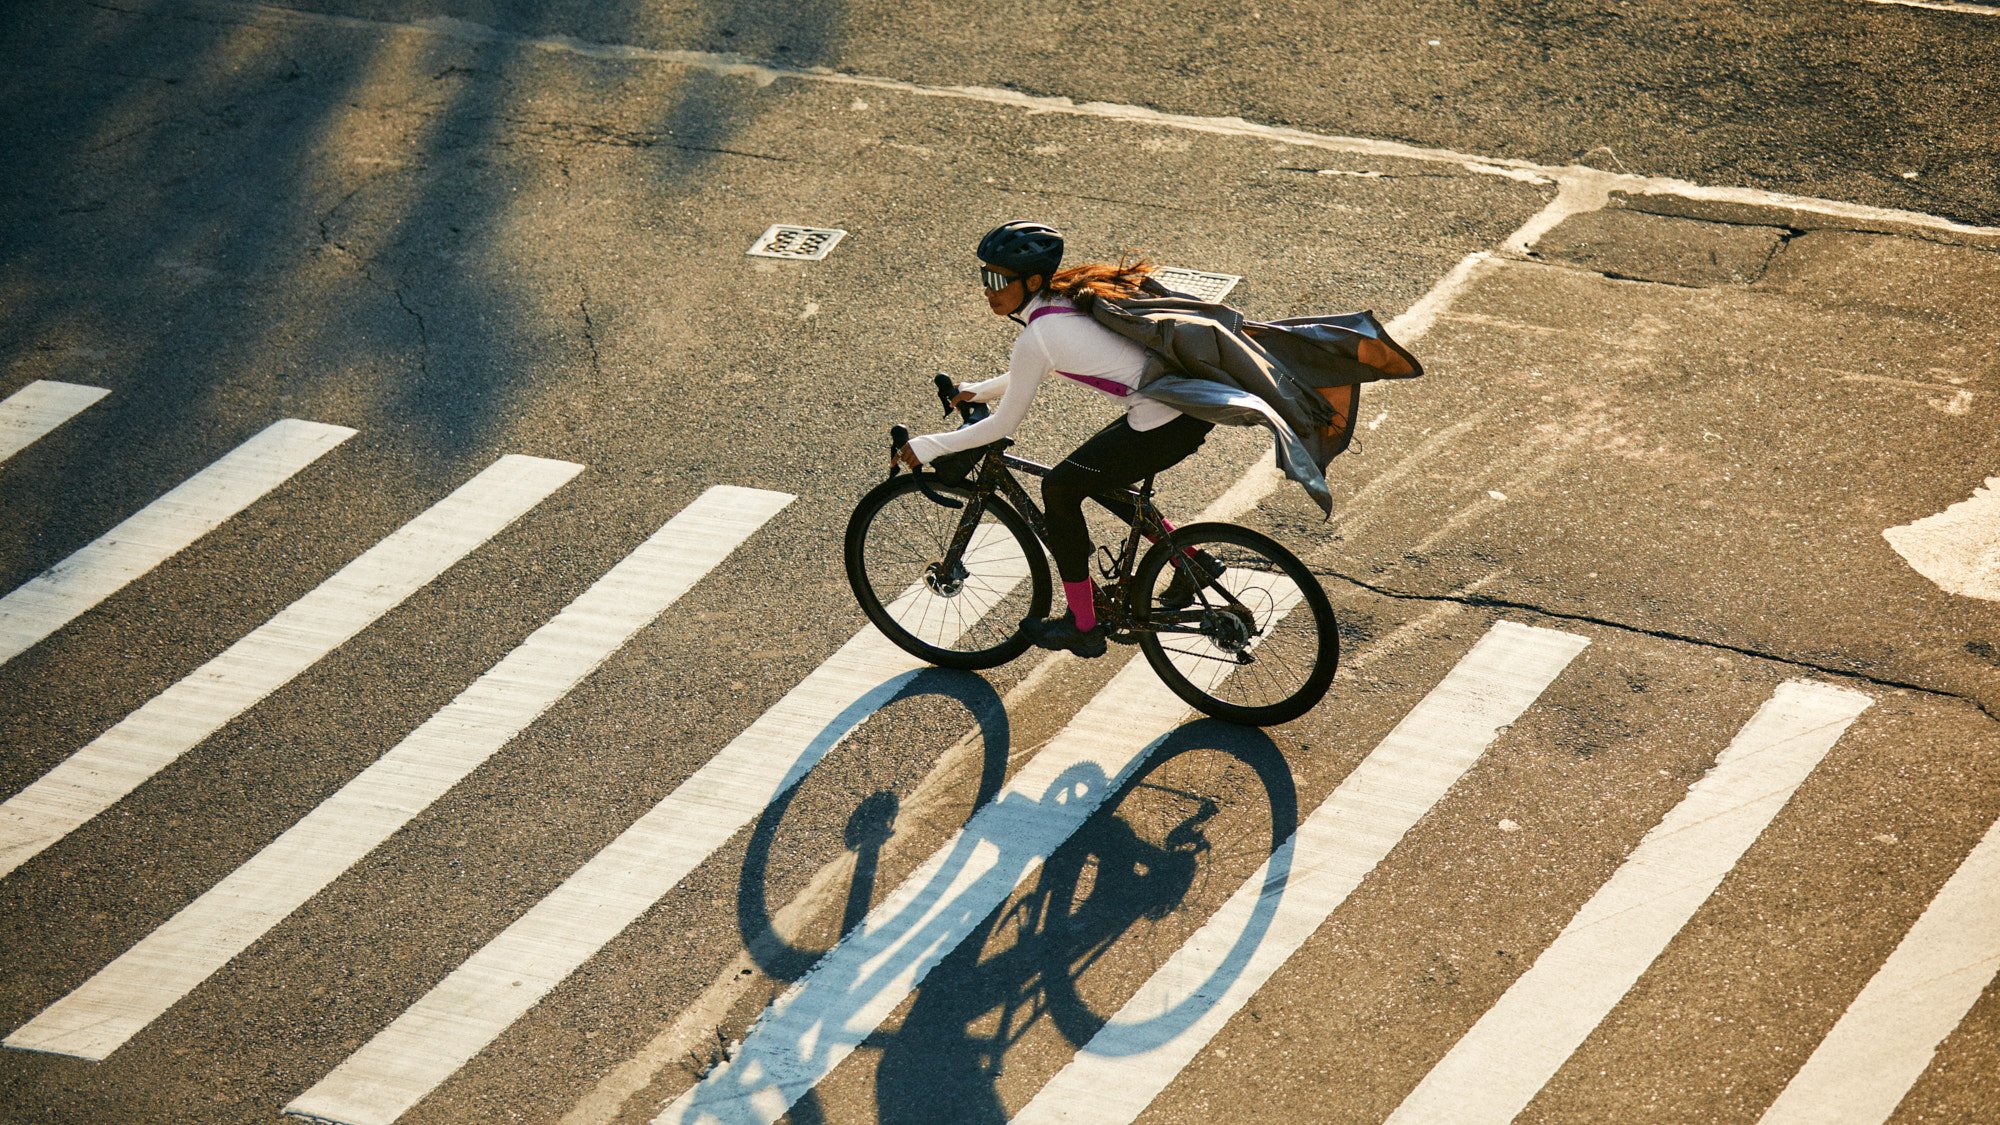 H&M CYCLING by Geoffrey Knott